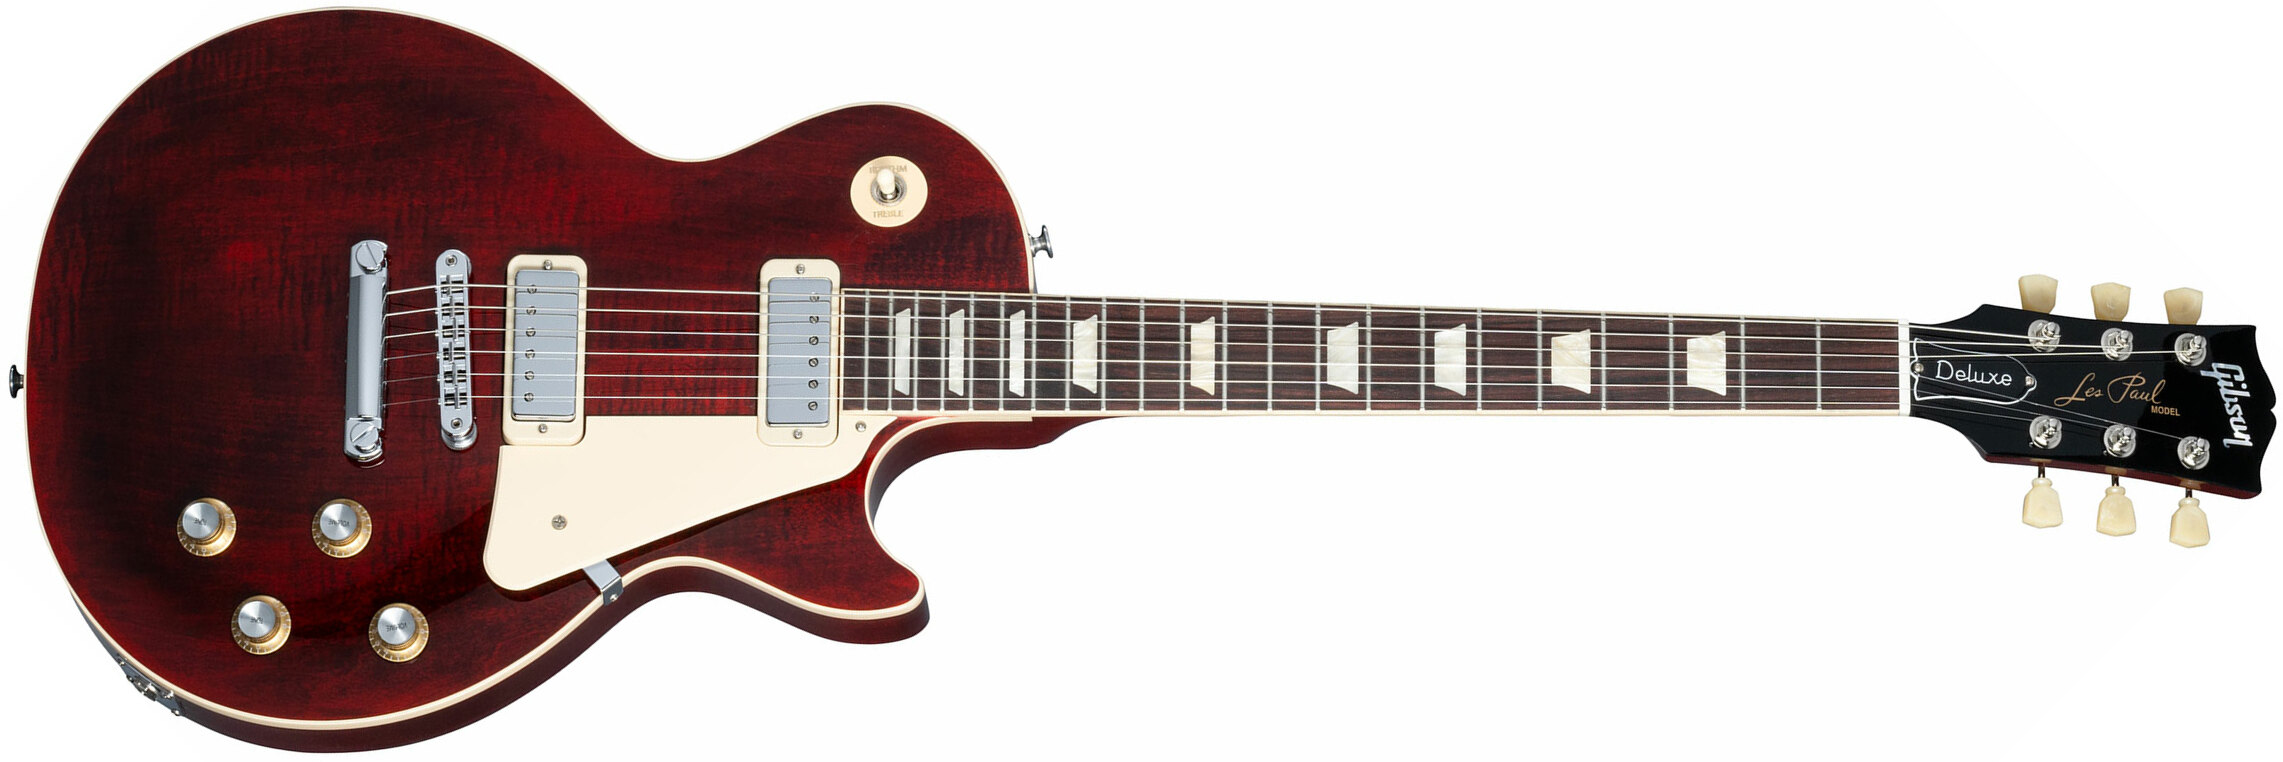 Gibson Les Paul Deluxe 70s Plain Top Original 2mh Ht Rw - Wine Red - Enkel gesneden elektrische gitaar - Main picture